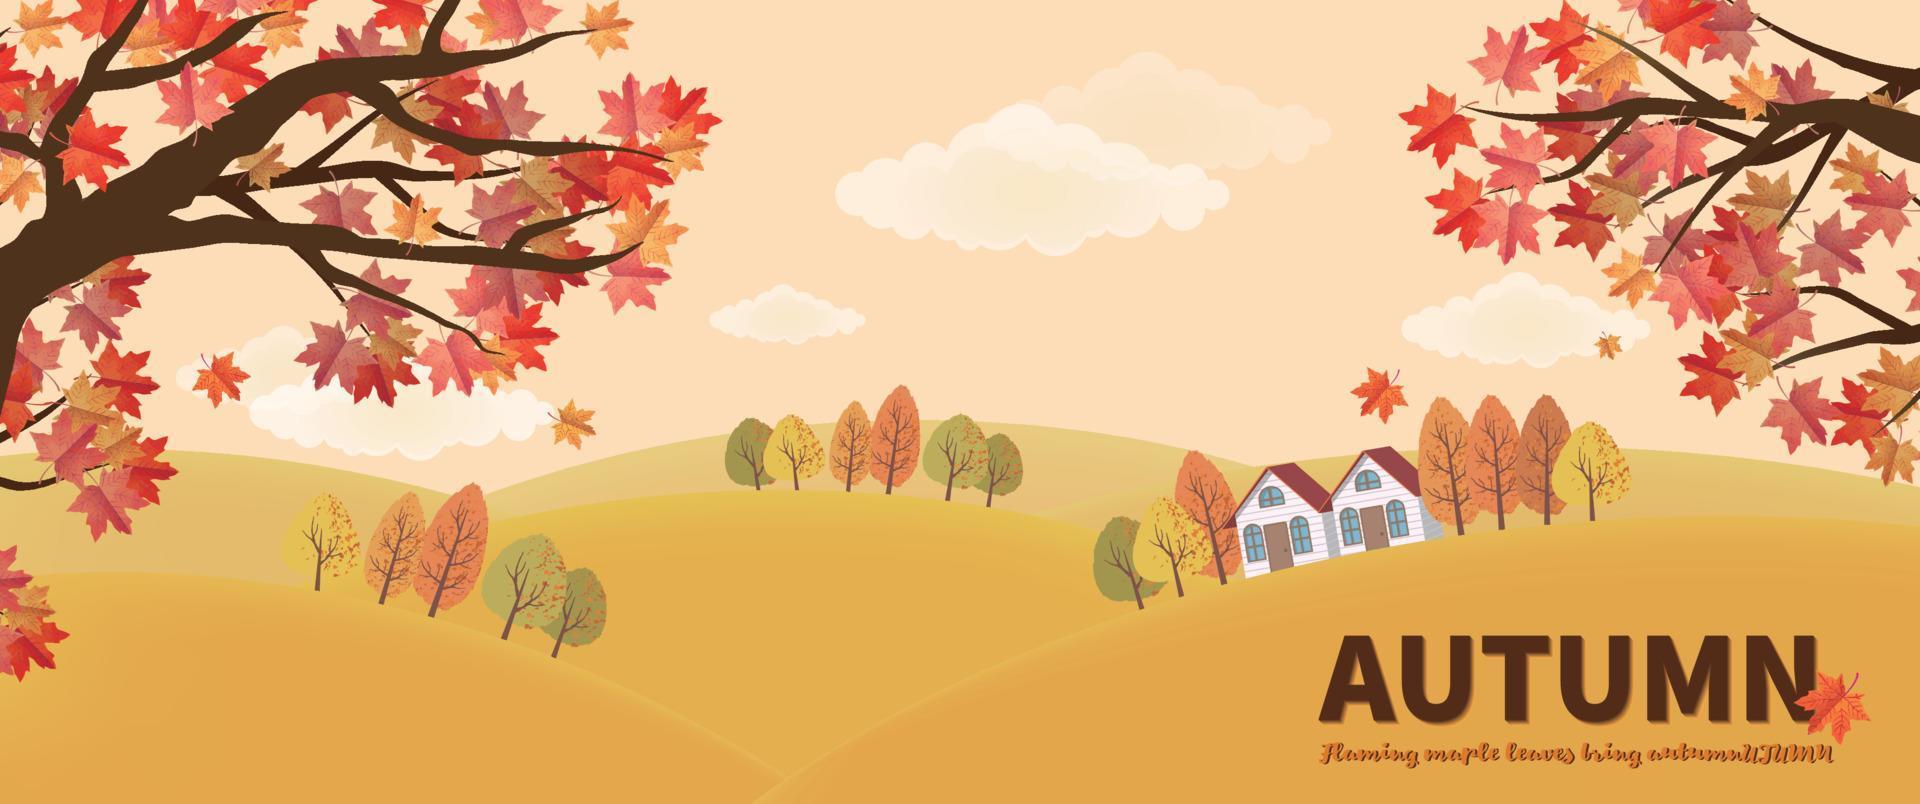 banner de outono com bordos vermelhos e cabana na encosta vetor